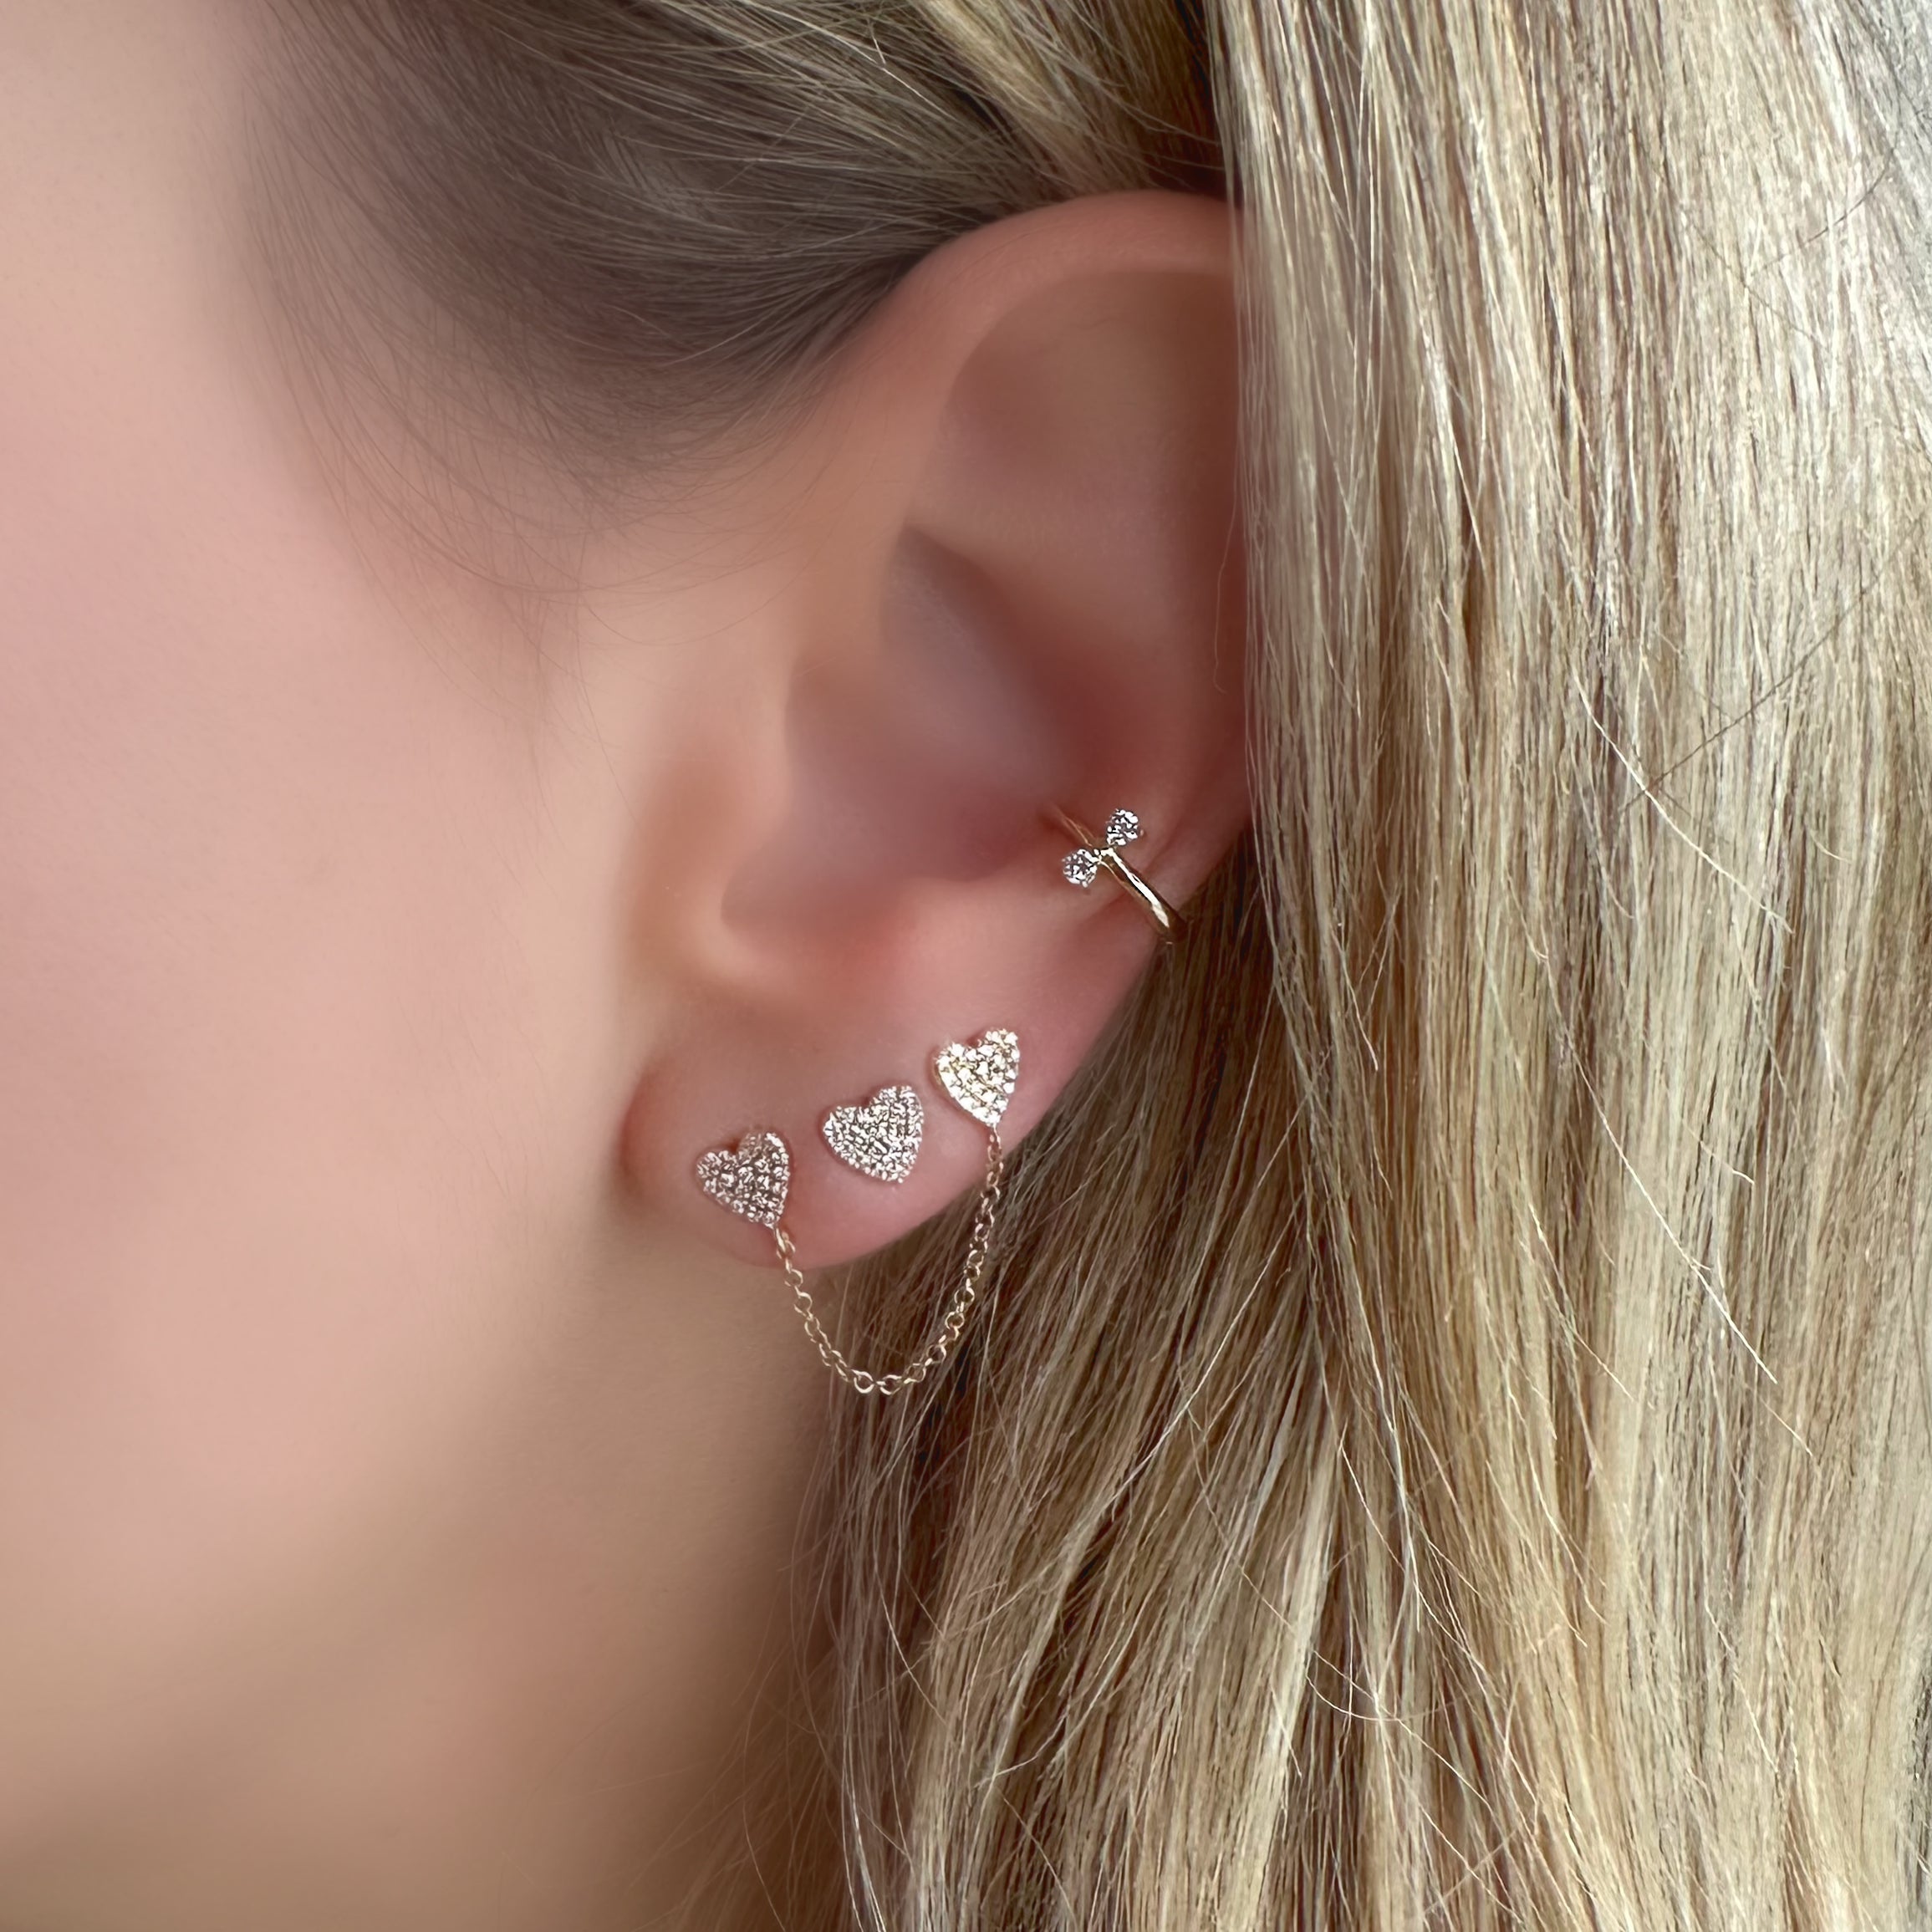 14K Gold Bowtie Diamond Ear Cuff - Earrings - Izakov Diamonds + Fine Jewelry